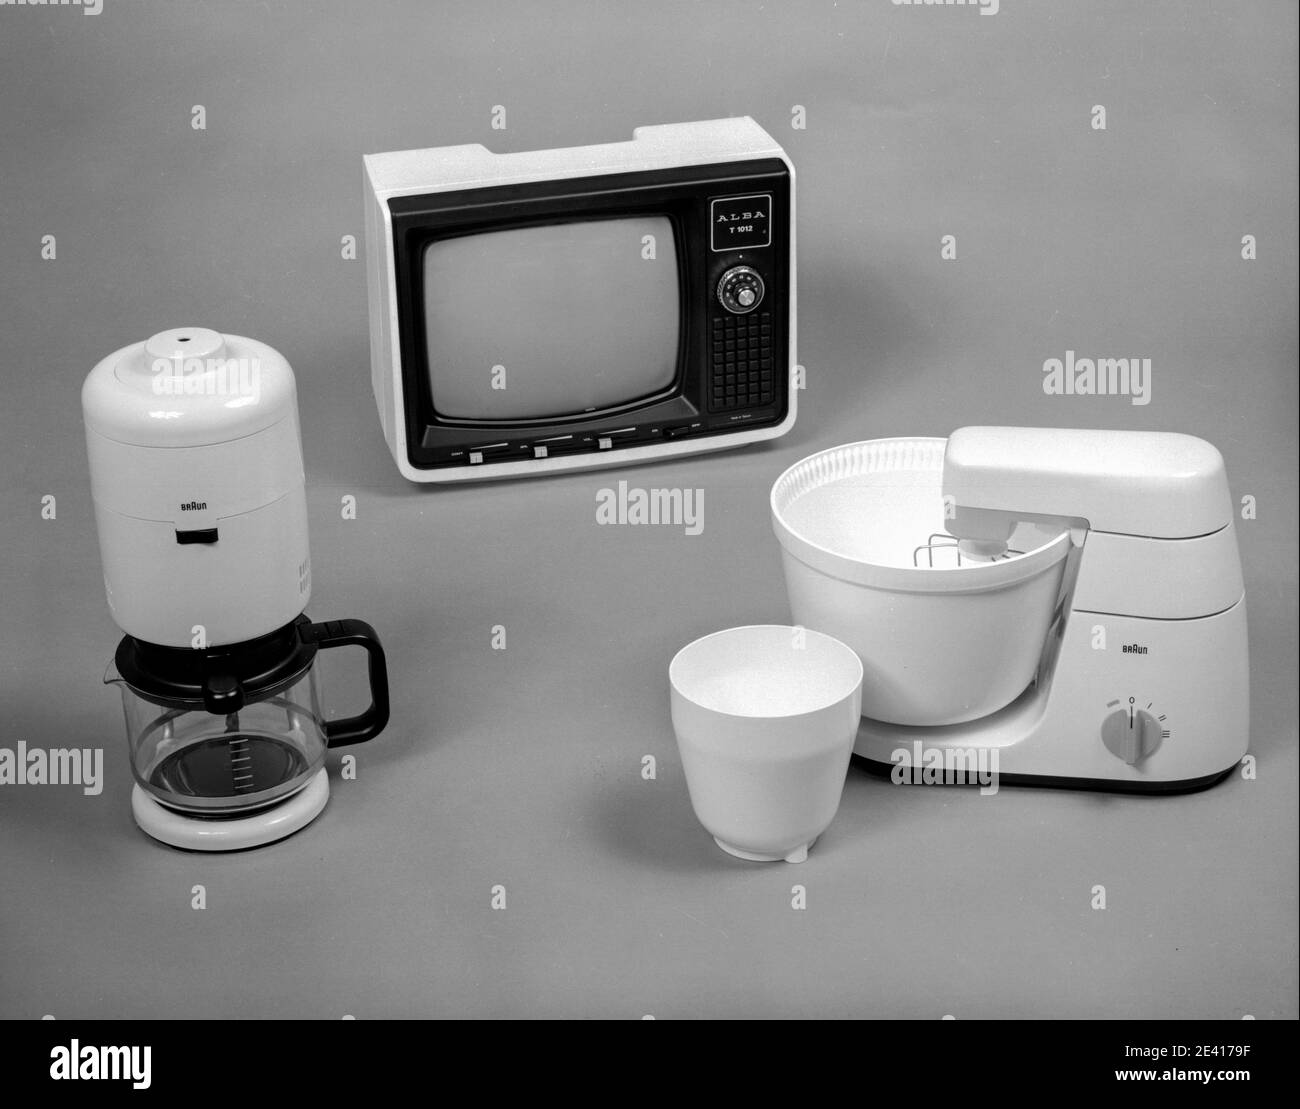 Un miscelatore di cibo, una macchina da caffè e un televisore portatile degli anni '60, articoli elettrici d'epoca per la casa. Foto Stock